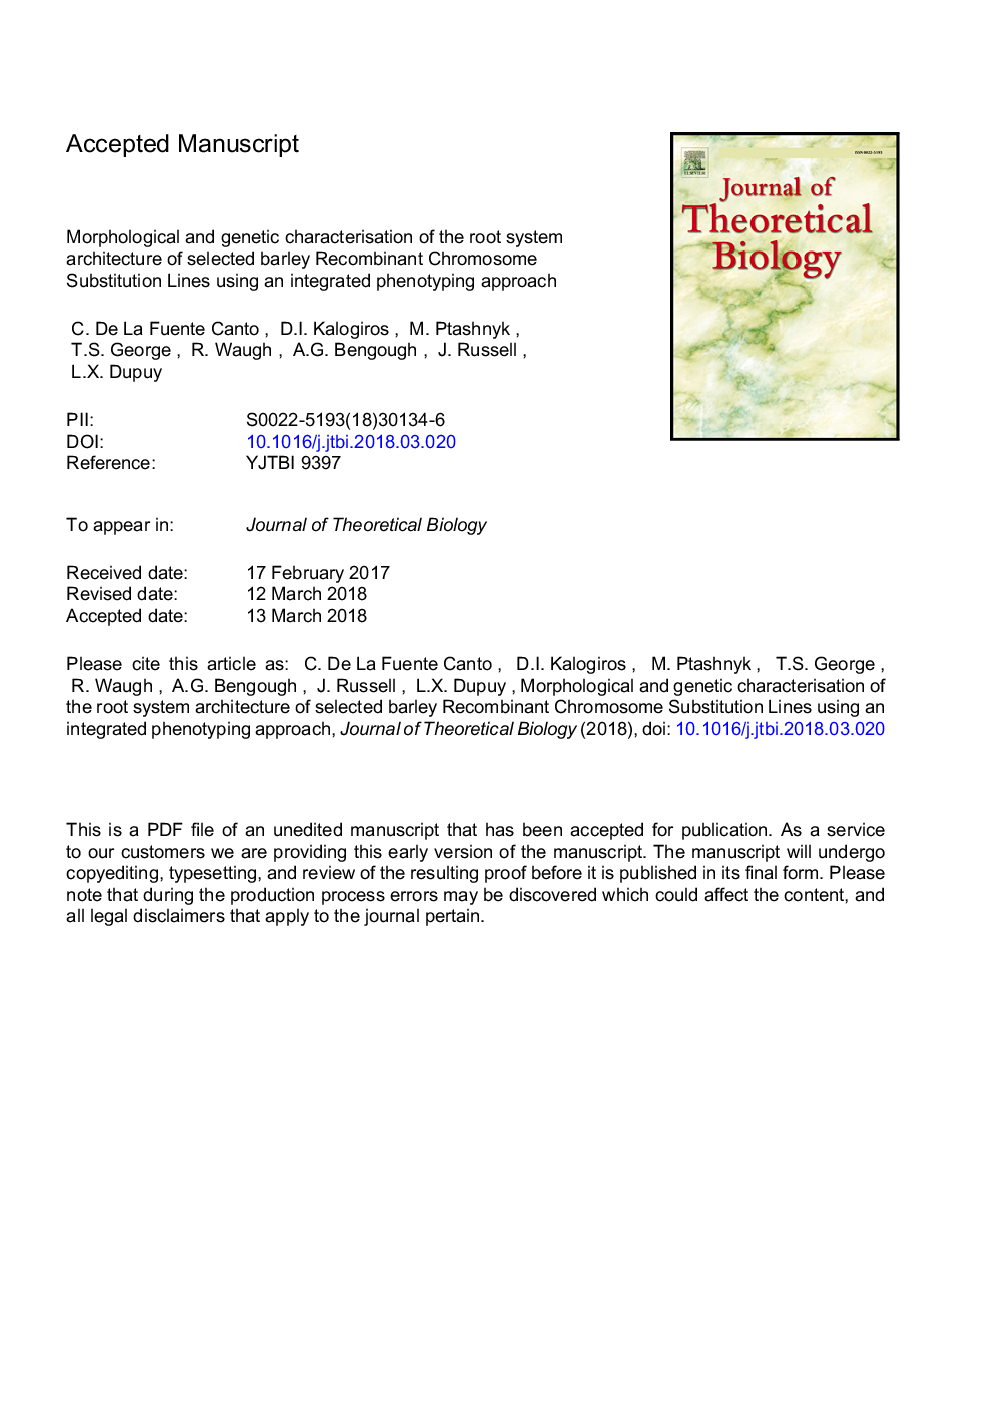 ویژگی های مورفولوژیک و ژنتیکی معماری ریشه سیستم خطوط جایگزینی کروموزوم نوترکیب جو غلیظ با استفاده از رویکرد فنوتیپی 